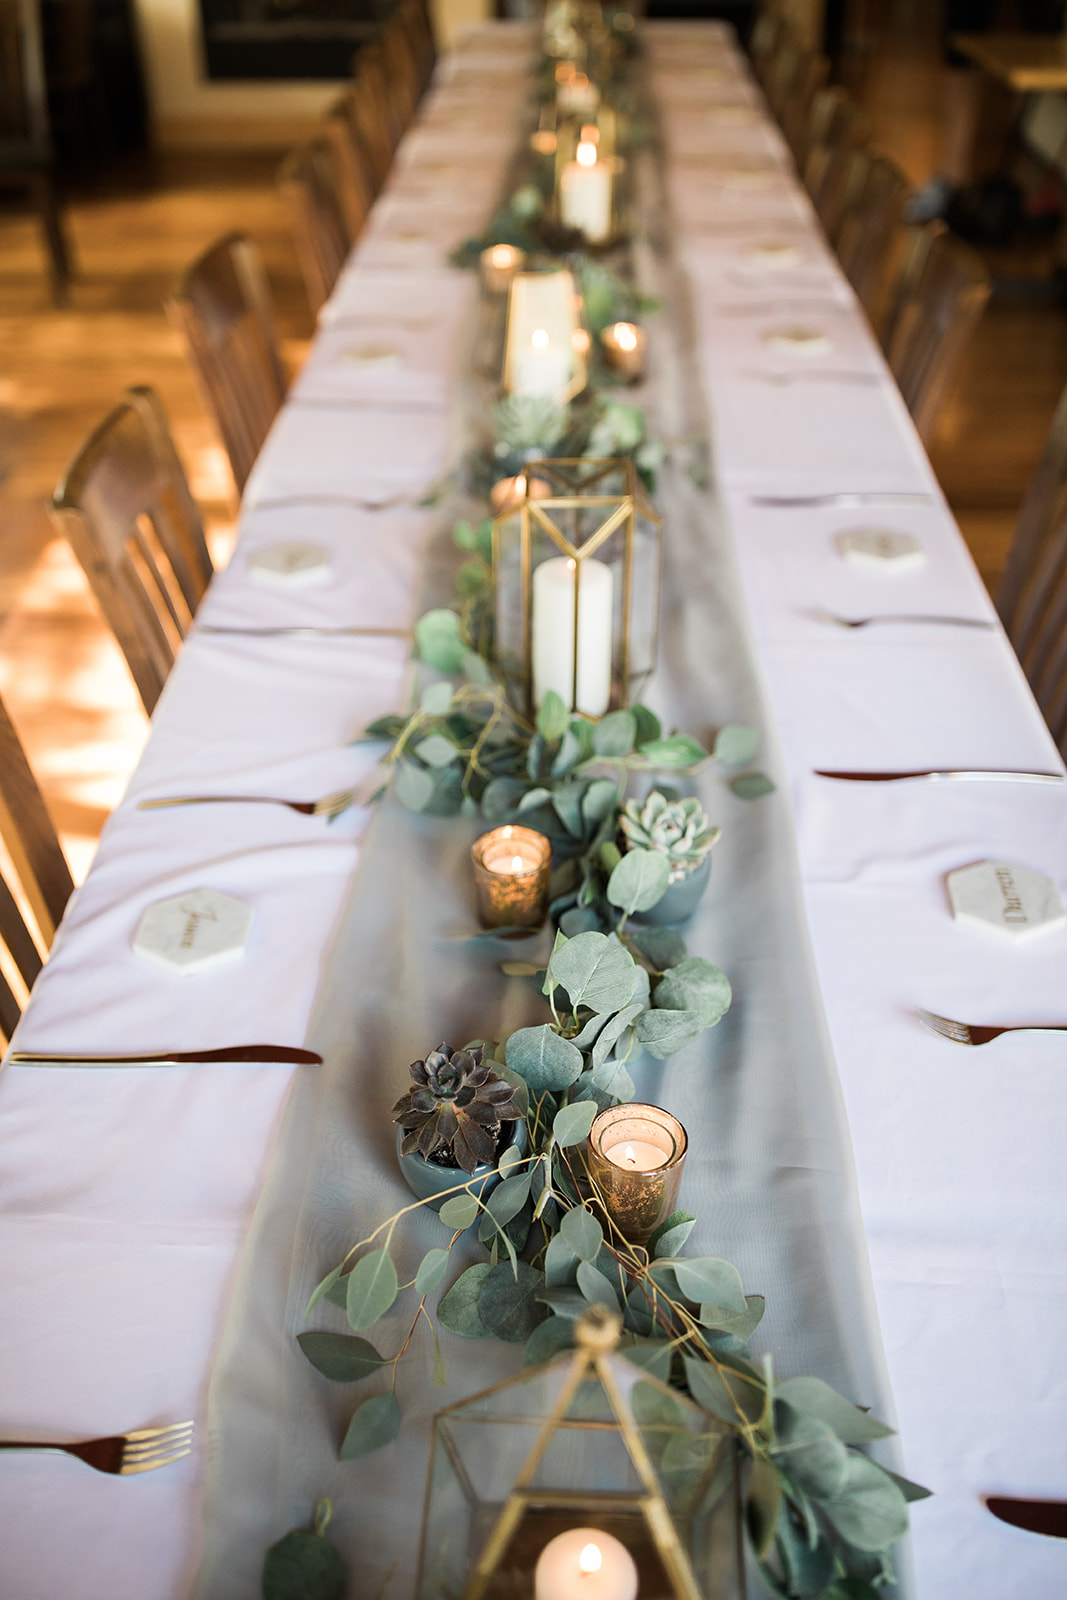 table set for Zion National Park elopement reception 